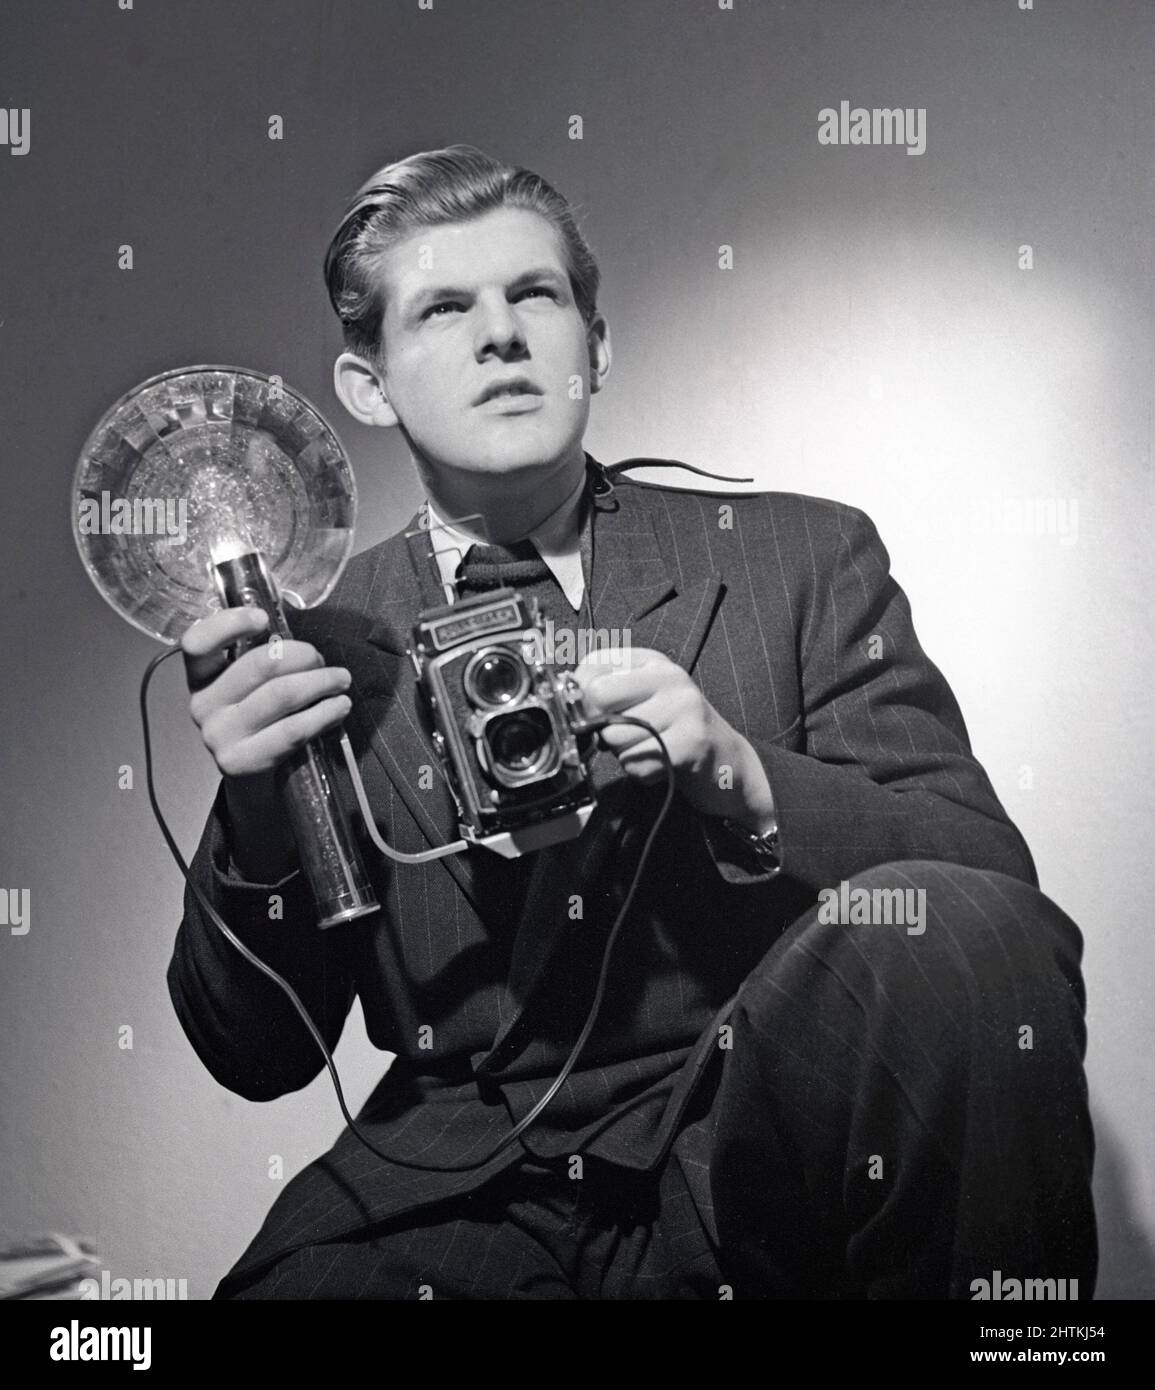 Pressefotograf der 1940s. Anders Swahn zeigte sich mit einer Rolleiflex-Kamera und einem tragbaren Blitzgerät. Eine Standardausstattung für Pressefotografen zu dieser Zeit. Schweden 1949 Kristoffersson Ref. AA40-4 Stockfoto